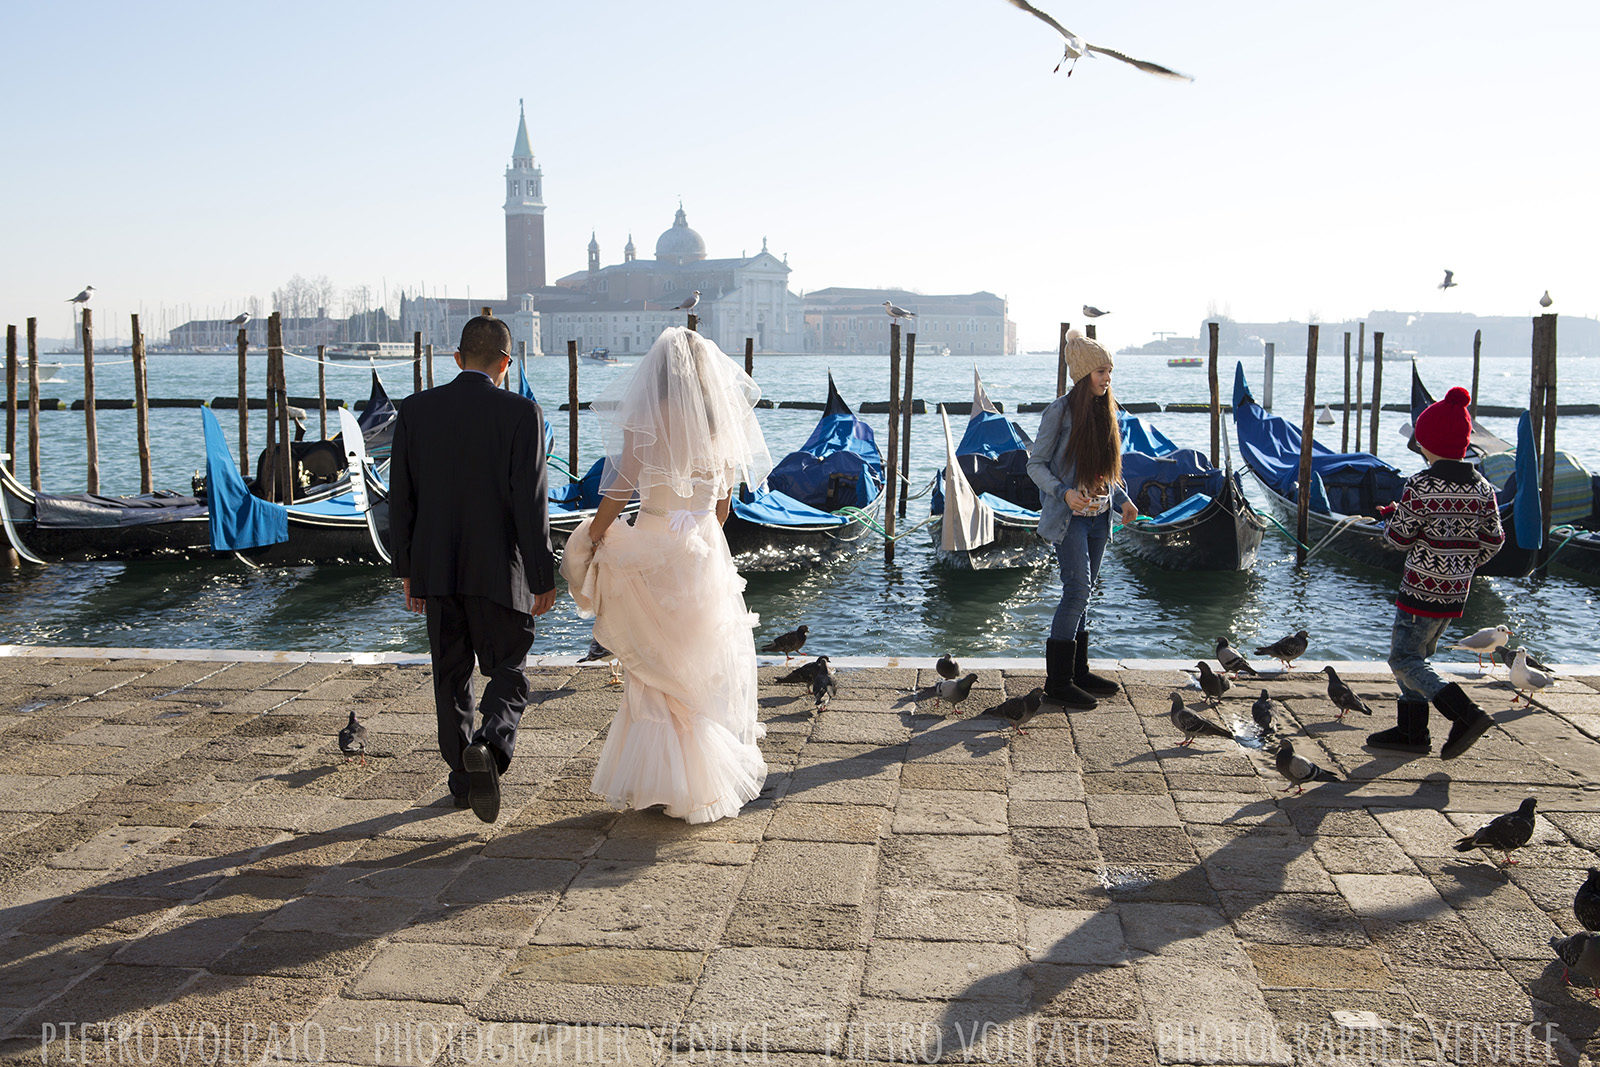 Fotografo a Venezia per servizio fotografico sposi in viaggio di nozze ~ Foto luna di miele Venezia ~ Fotografie + divertimento + passeggiata + gondola